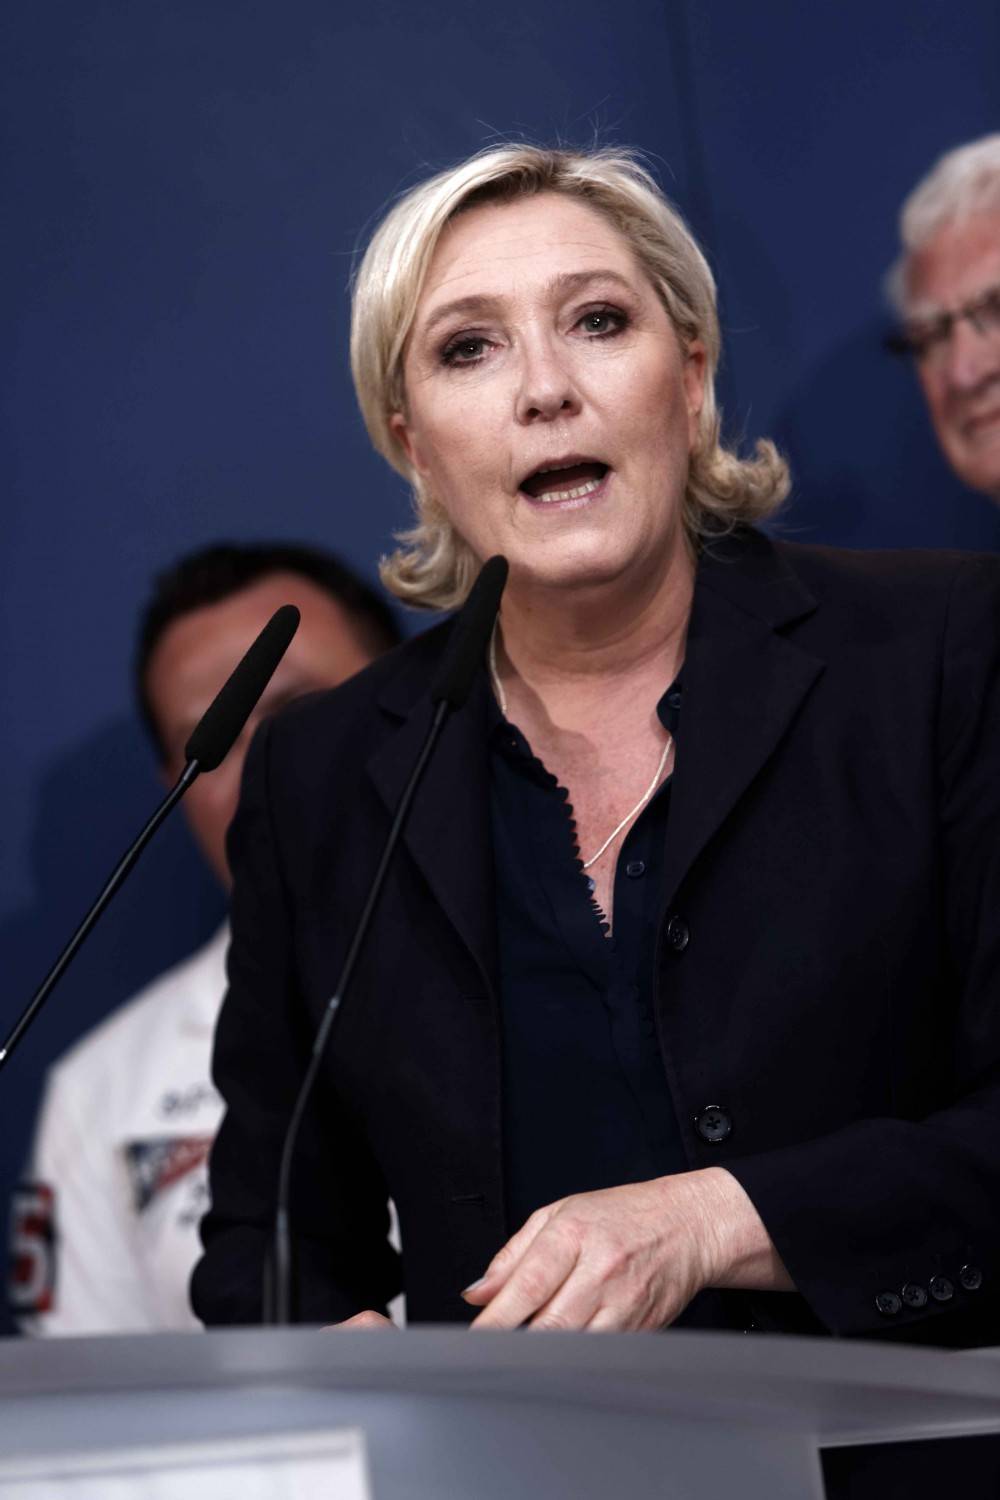 La carica di Marine Le Pen: "L'Ue è contro i valori cristiani"